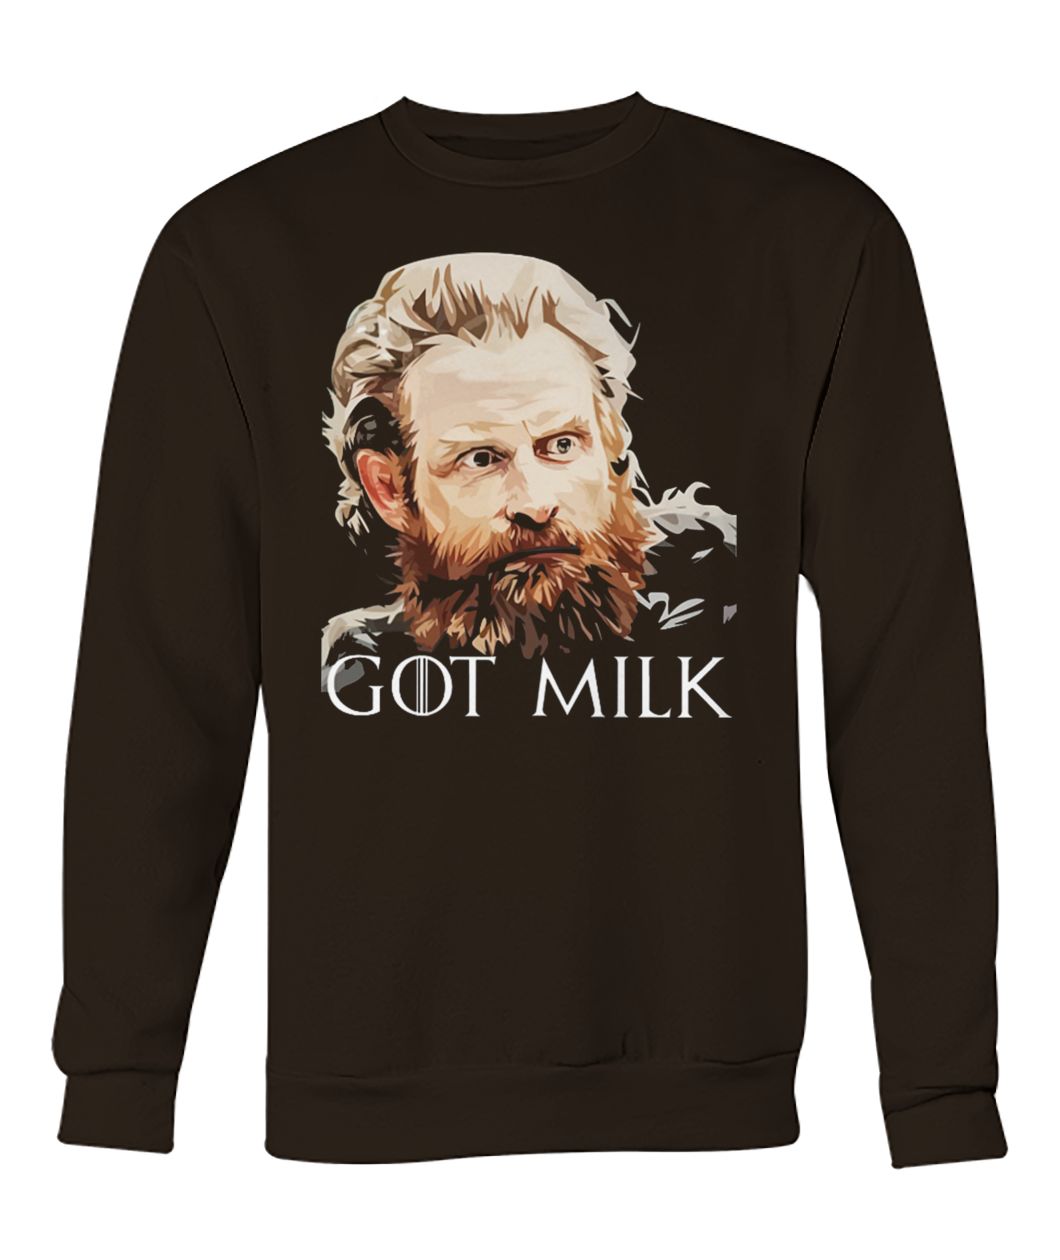 Game of thrones tormund giantsbane got milk crew neck sweatshirt